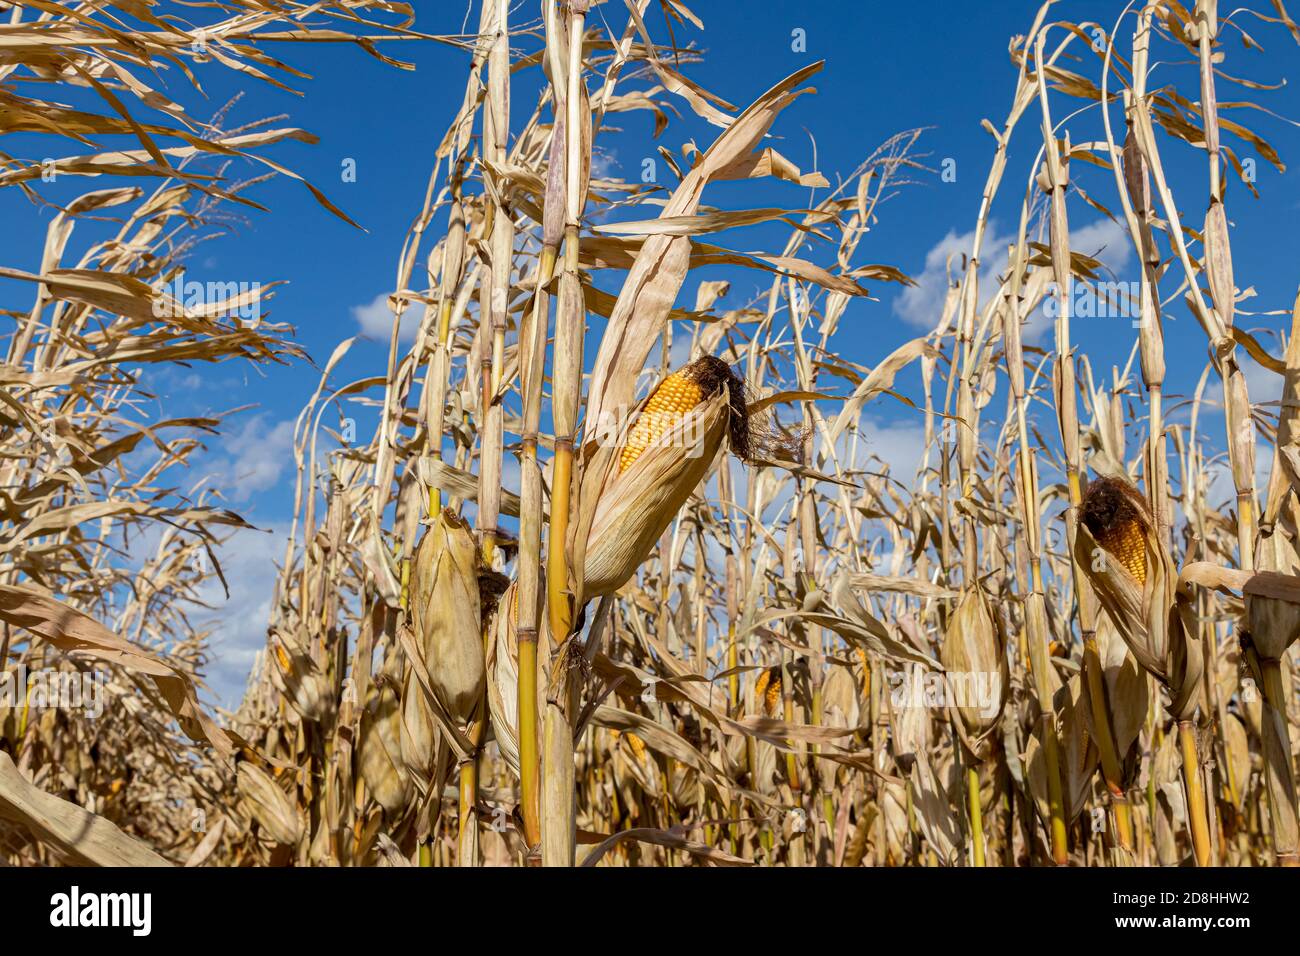 Nahaufnahme der Ähre des Mais auf dem braunen Kornstiel bereit für die Ernte. Konzept der Erntezeit, Landwirtschaft, Landwirtschaft und Ethanol. Stockfoto